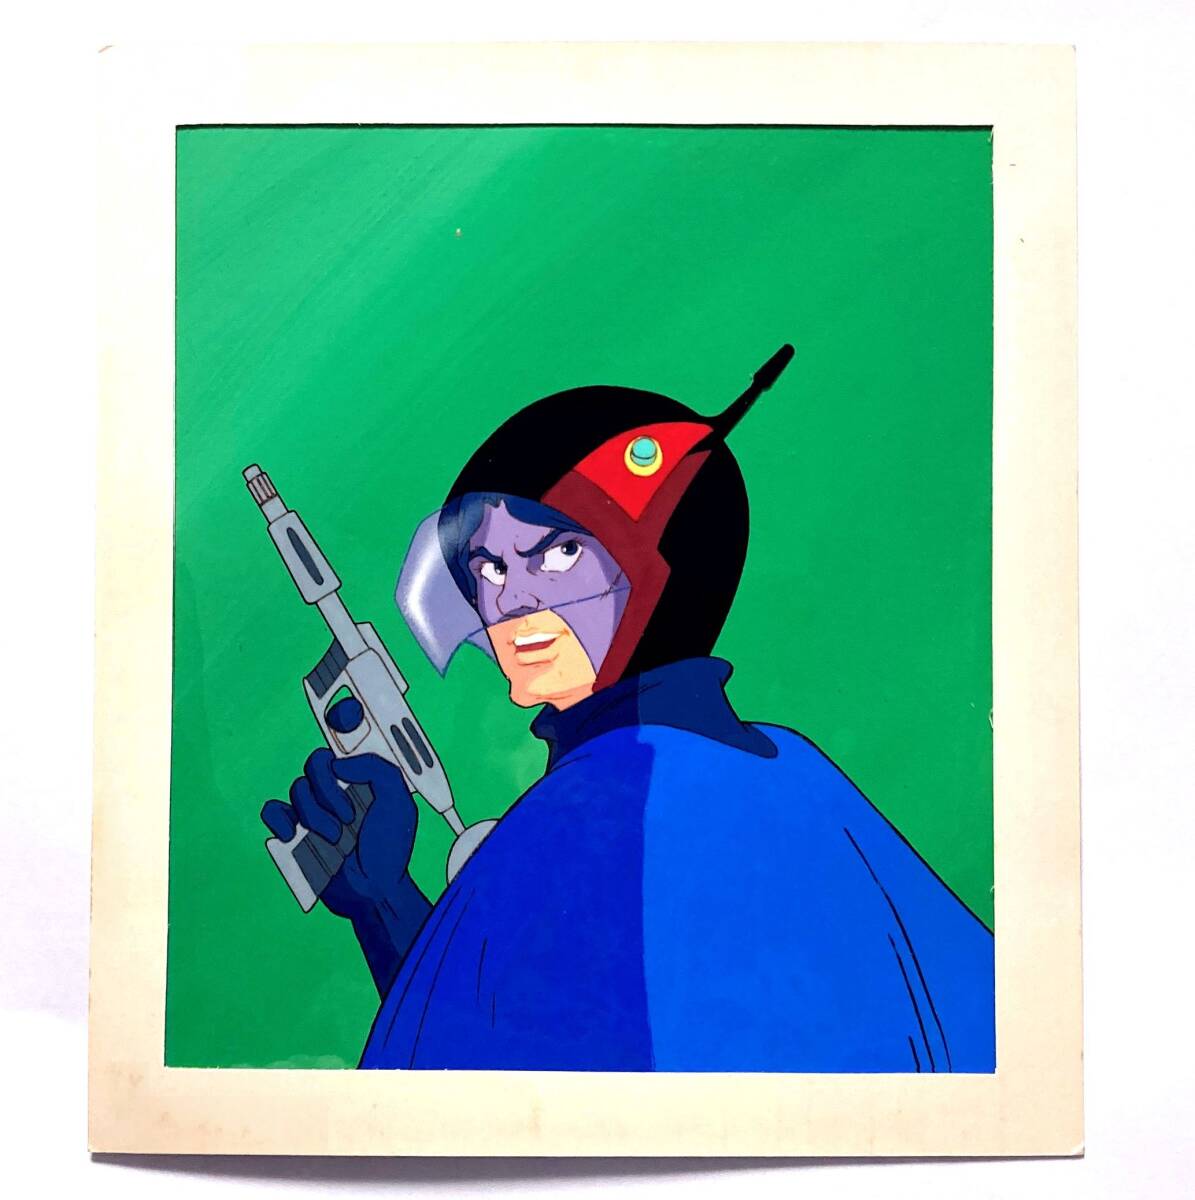 * Science Ninja Team Gatchaman * Condor. Joe цифровая картинка ( cell cut ) размер ширина примерный 23.0cm× длина примерный 25.0cmtatsunoko Pro / Yoshida дракон Хара не продается 